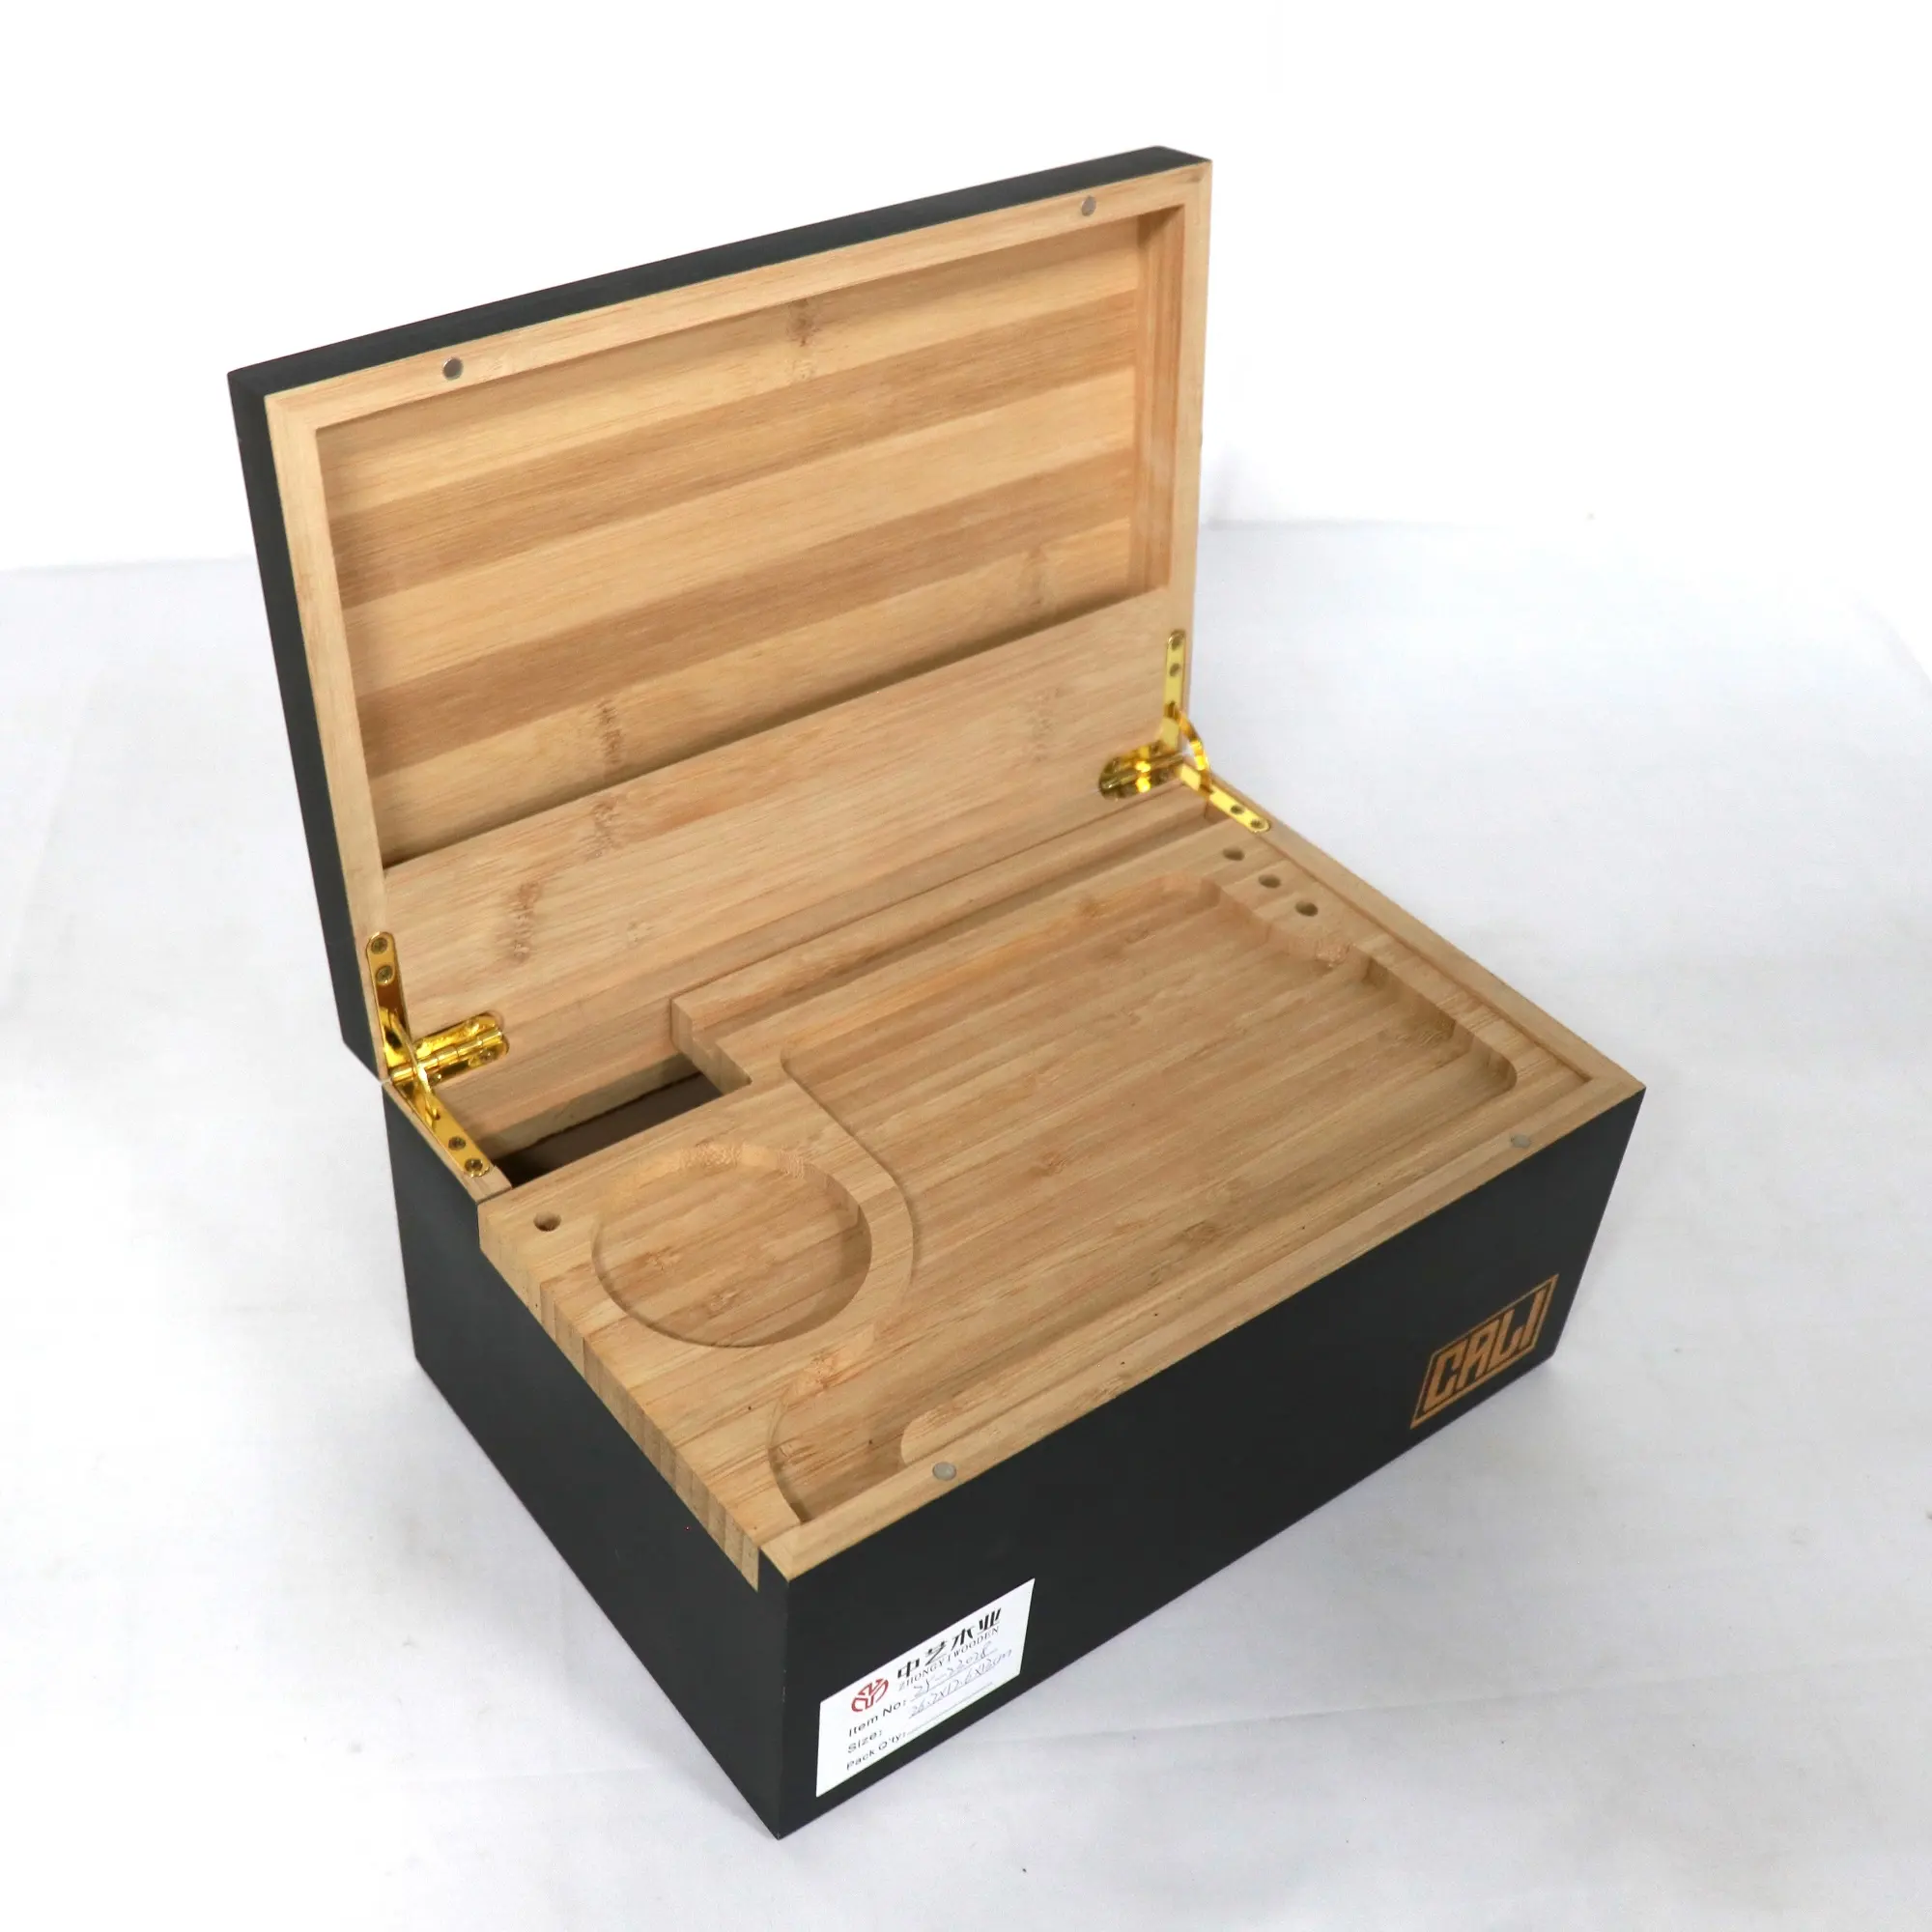 OEM trang trí bằng gỗ sang trọng Stash hộp hút tre Stash Box với khay cán hộp gỗ với nắp có bản lề